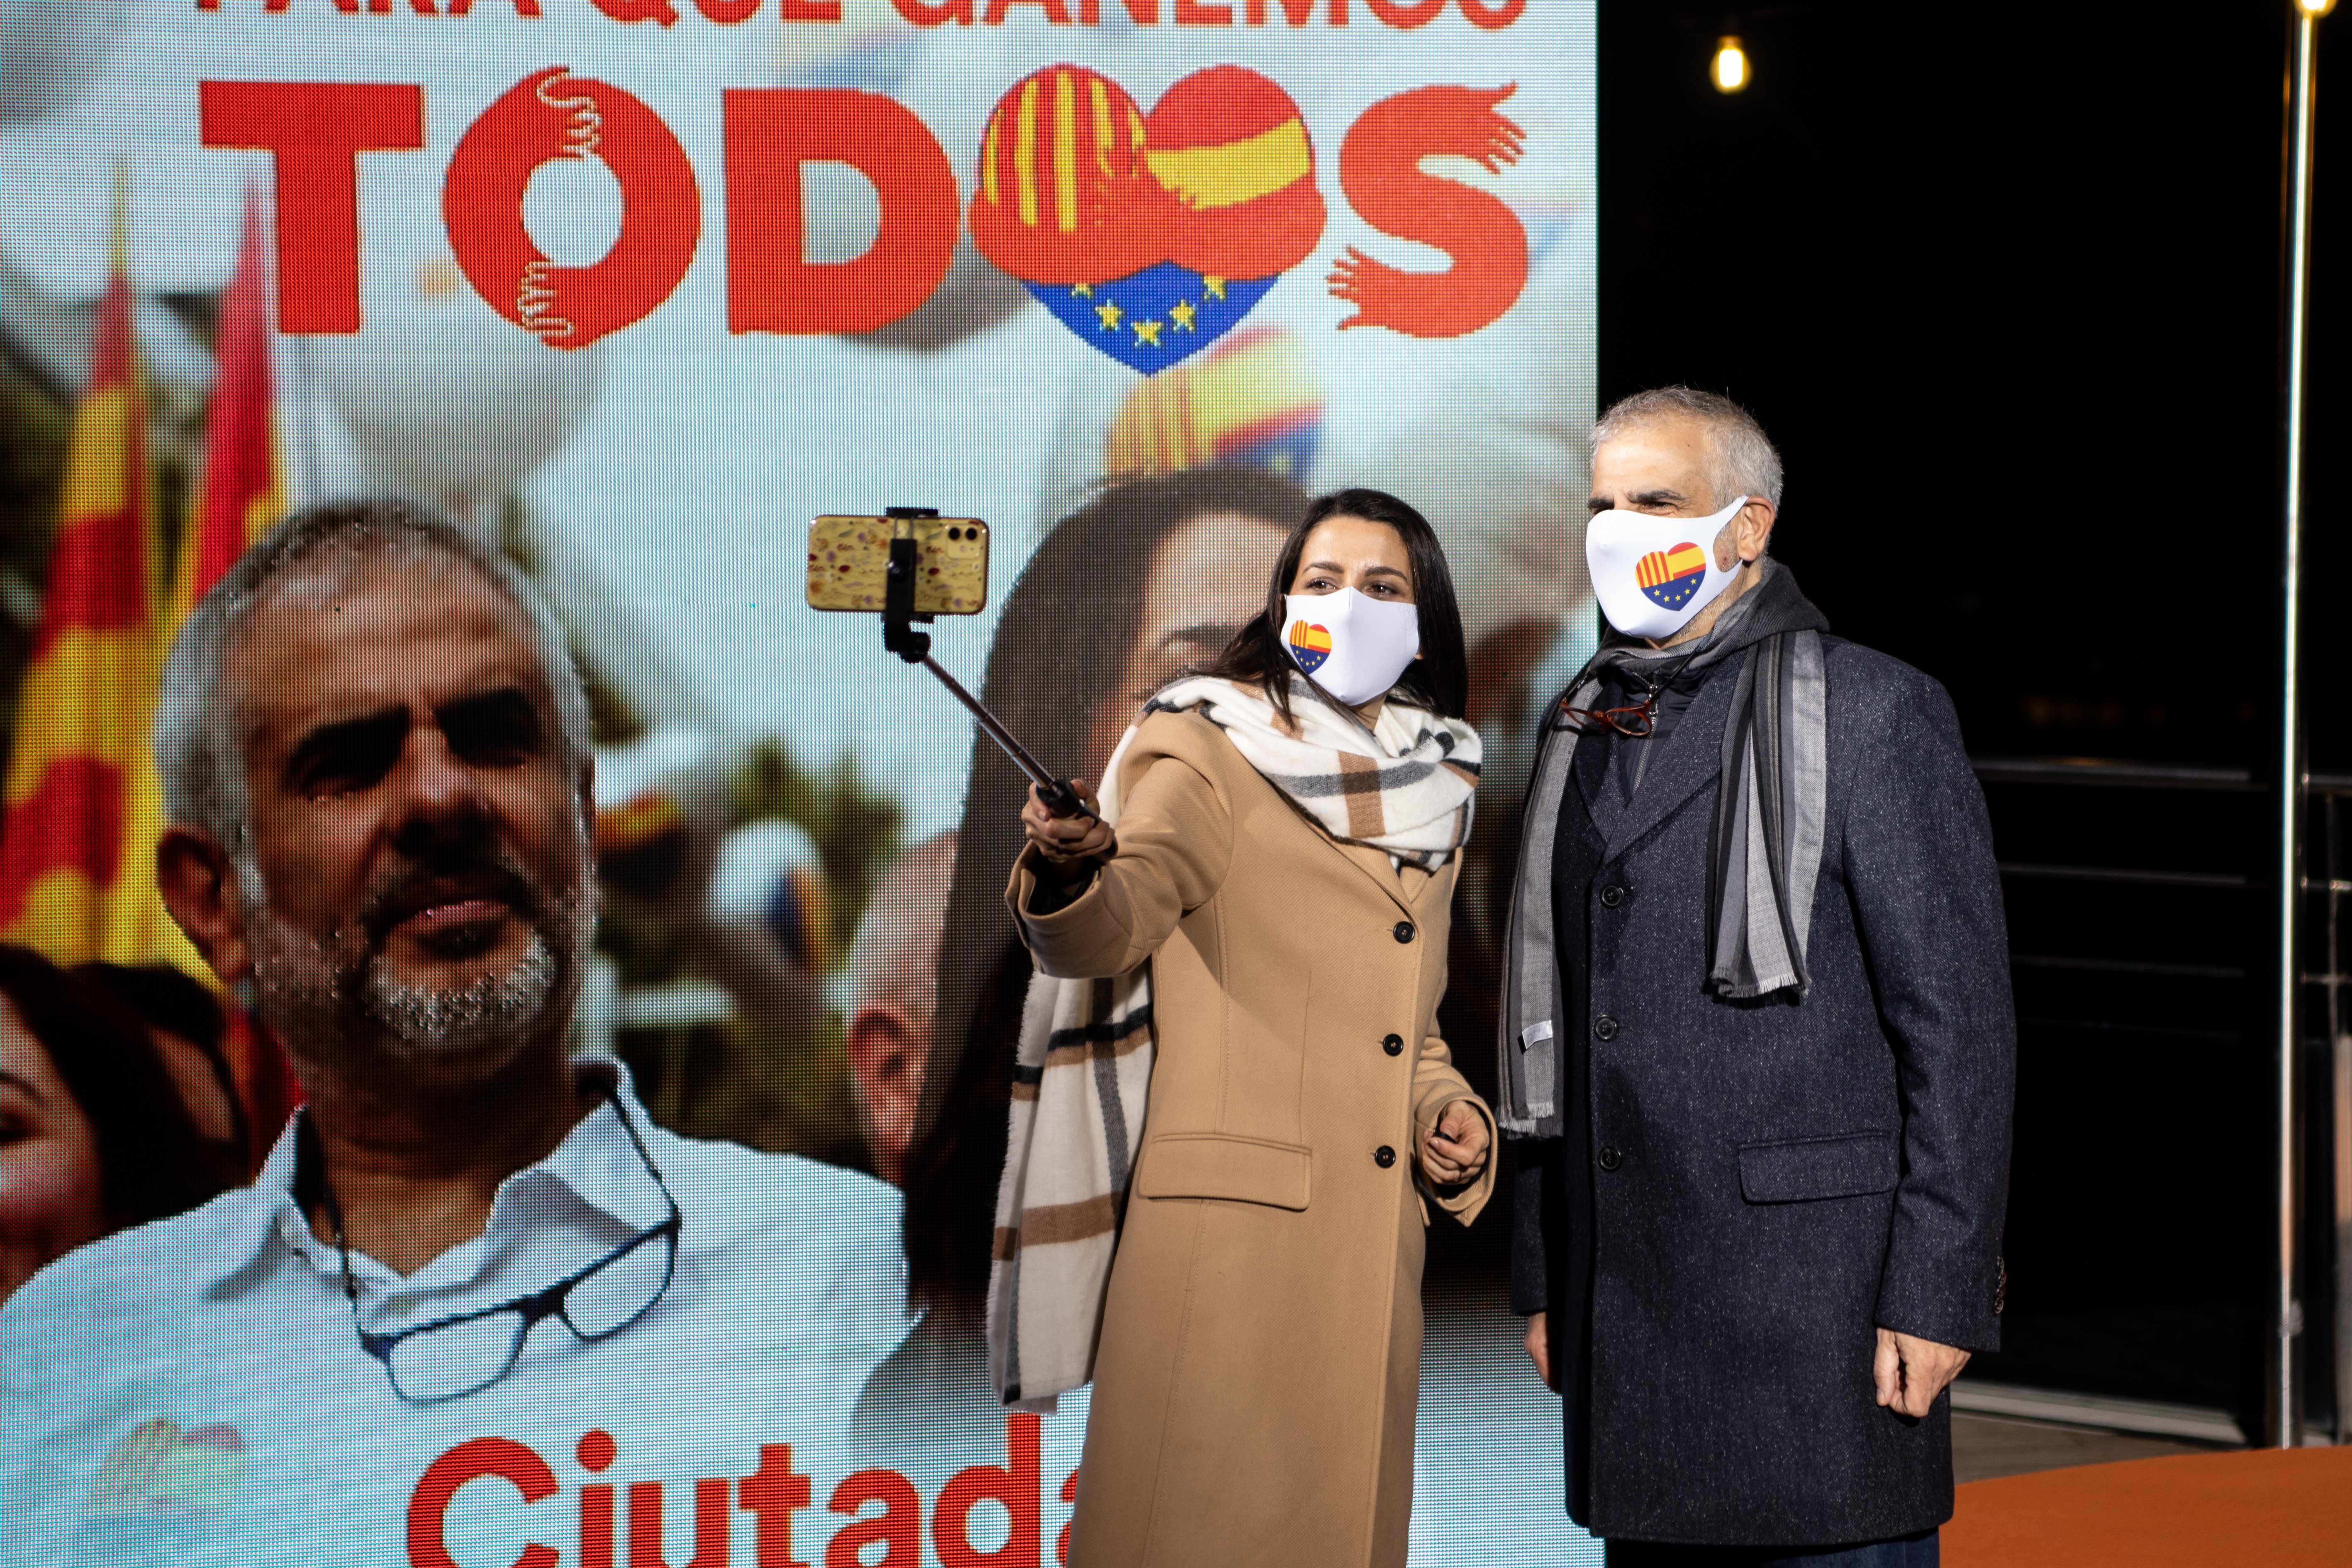 La refundación de Ciudadanos no afectará a Catalunya: "Aquí la marca es potente"